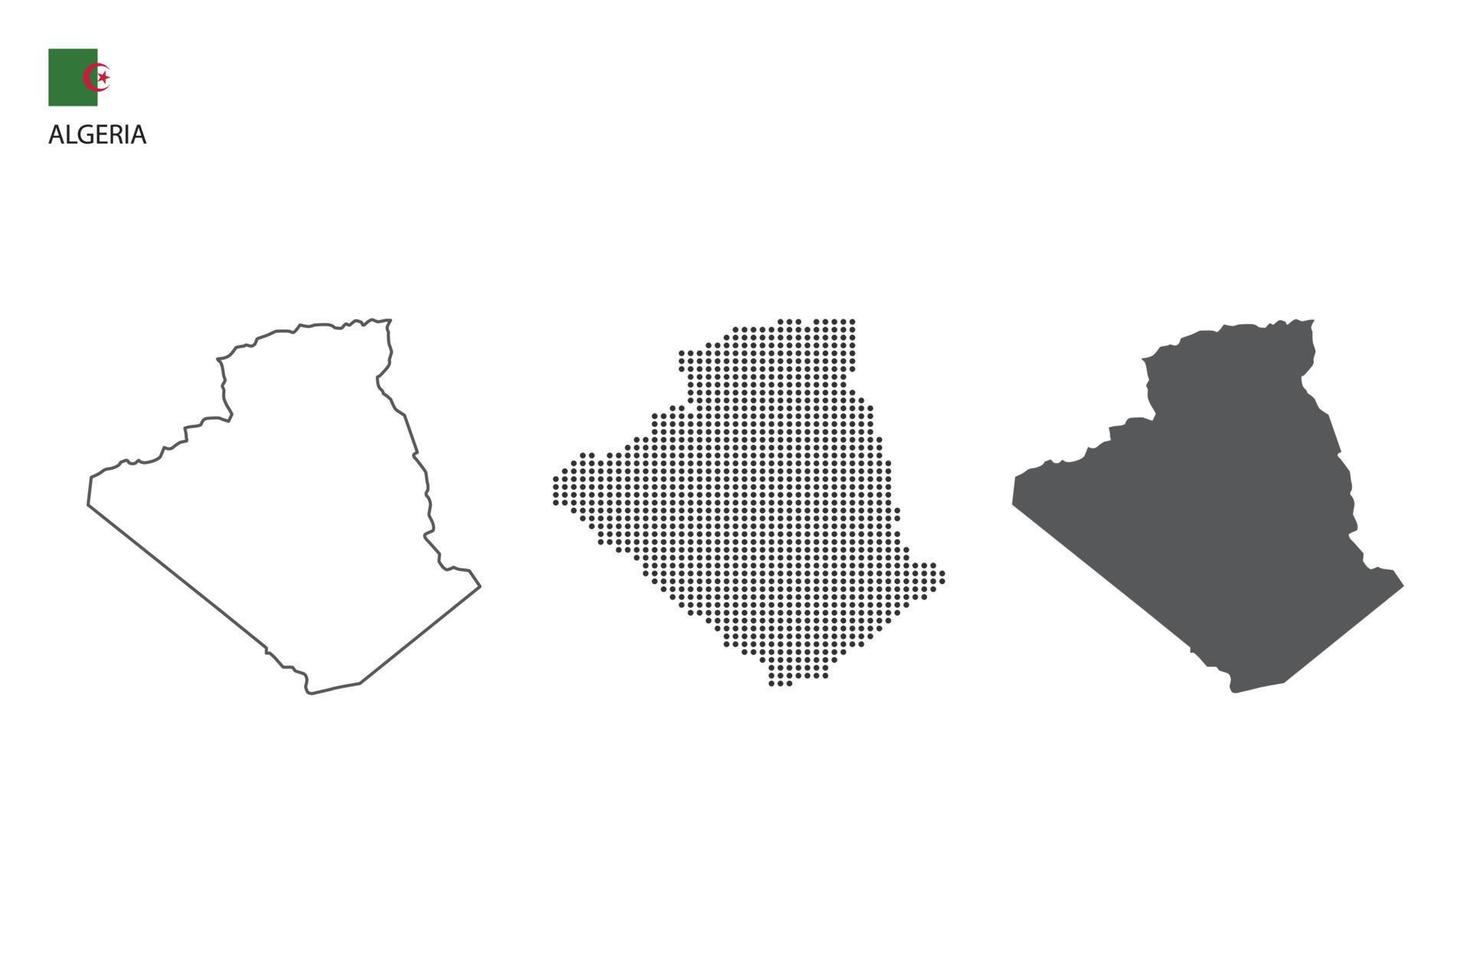 3 versões do vetor da cidade do mapa da Argélia pelo estilo de simplicidade de contorno preto fino, estilo de ponto preto e estilo de sombra escura. tudo no fundo branco.